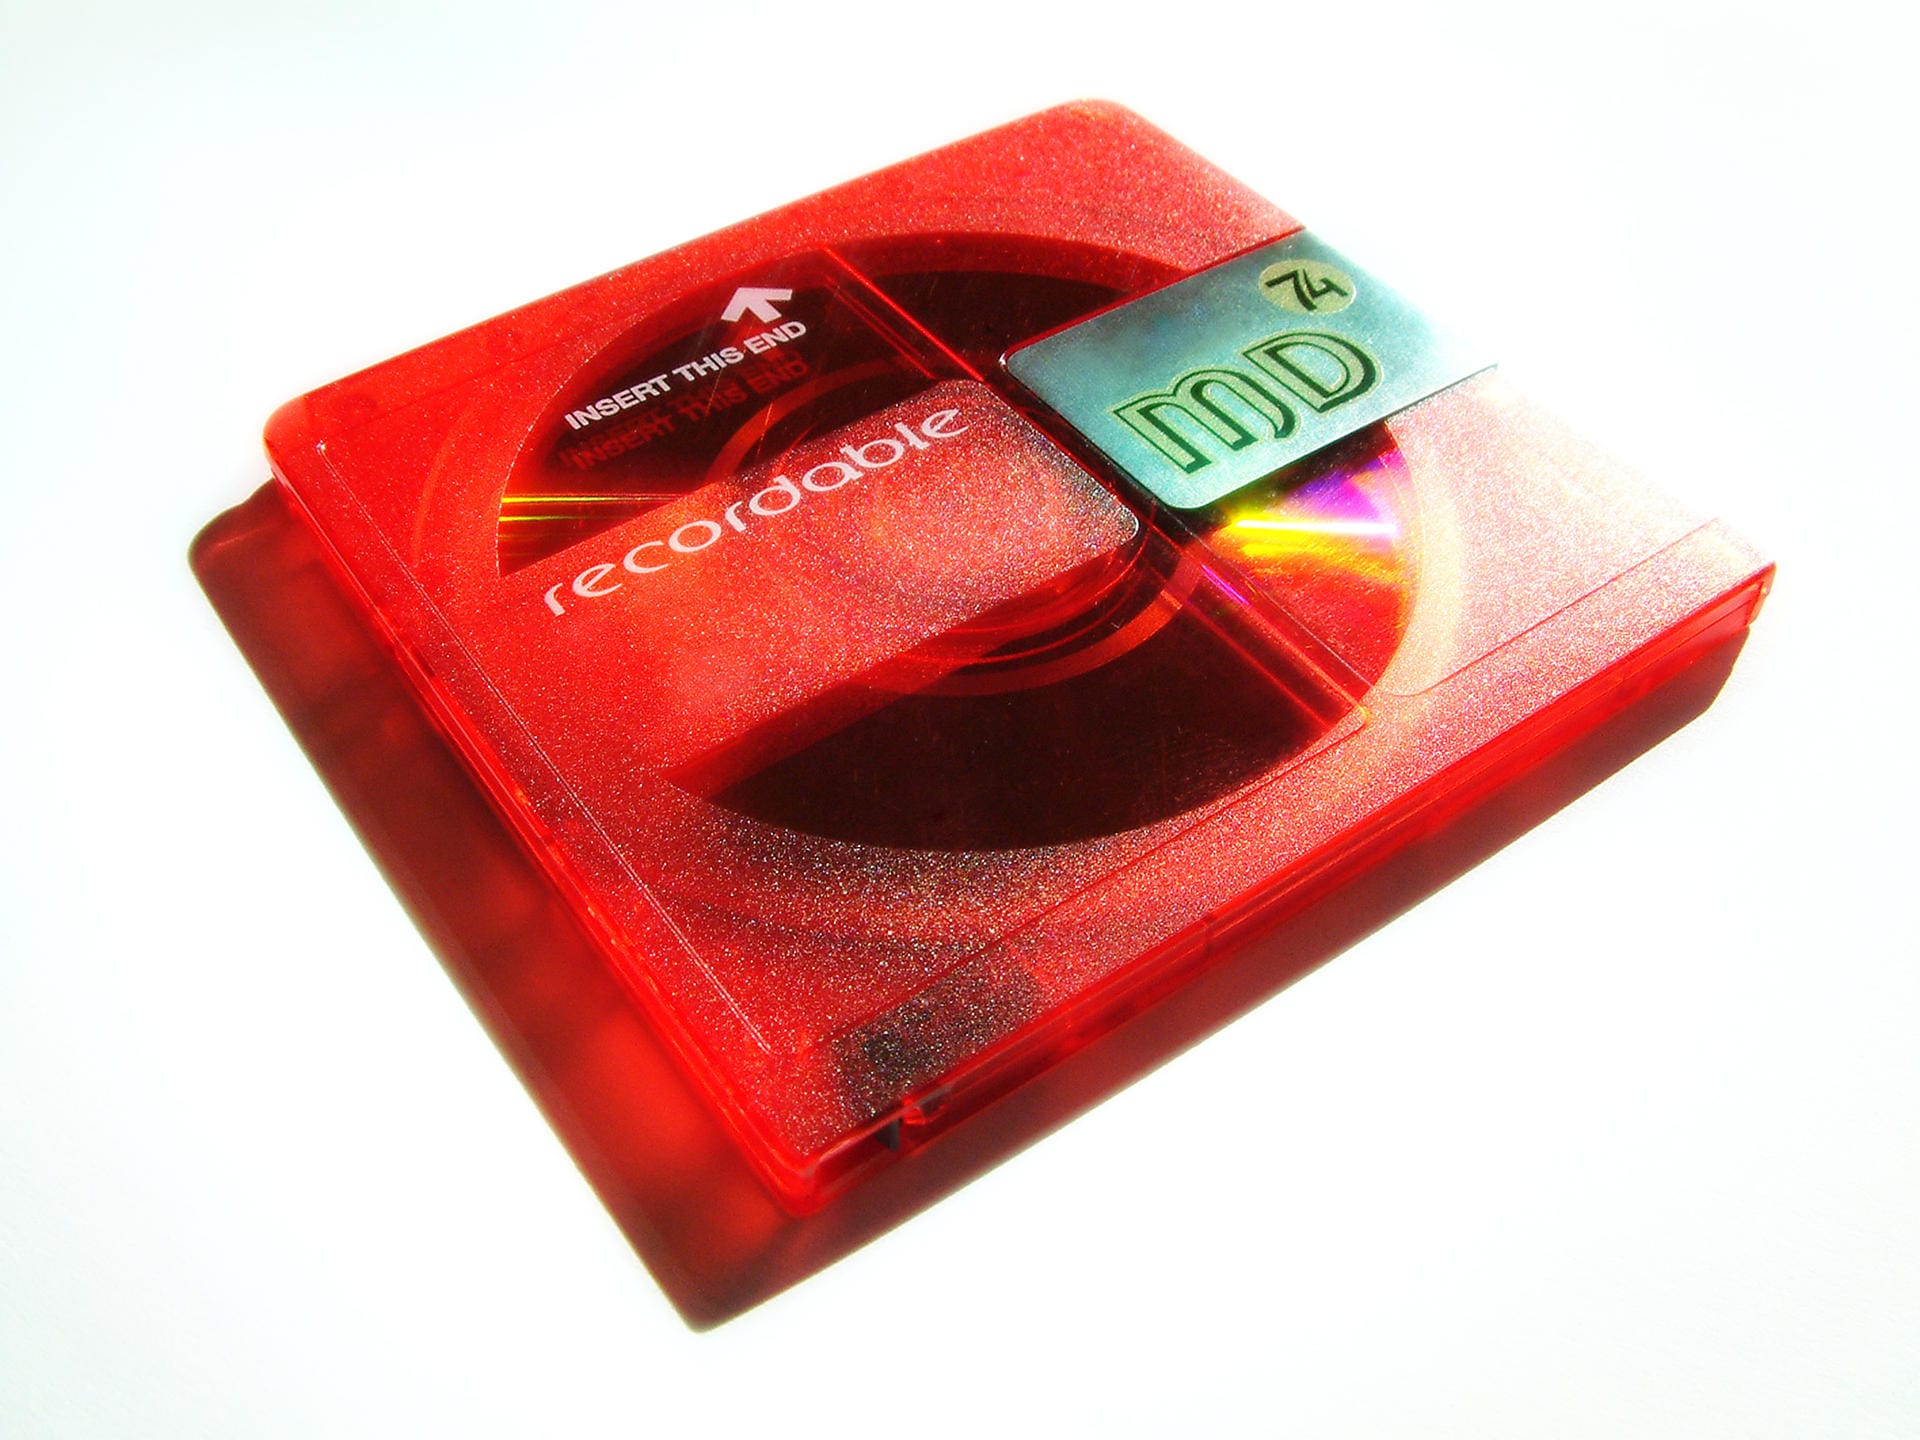 1991 präsentierte Sony die MiniDisc (MD) und wollte damit die Kassette als Speichermedium ablösen. Trotz seiner Vorteile, wie beispielsweise einem größeren Speicherformat, konnte sich die MiniDisc auf dem Massenmarkt aber nicht durchsetzen. Vor allem CDs machten den MDs später Konkurrenz. Im März 2013 beendete Sony die Produktion von Abspielgeräten für MiniDiscs.